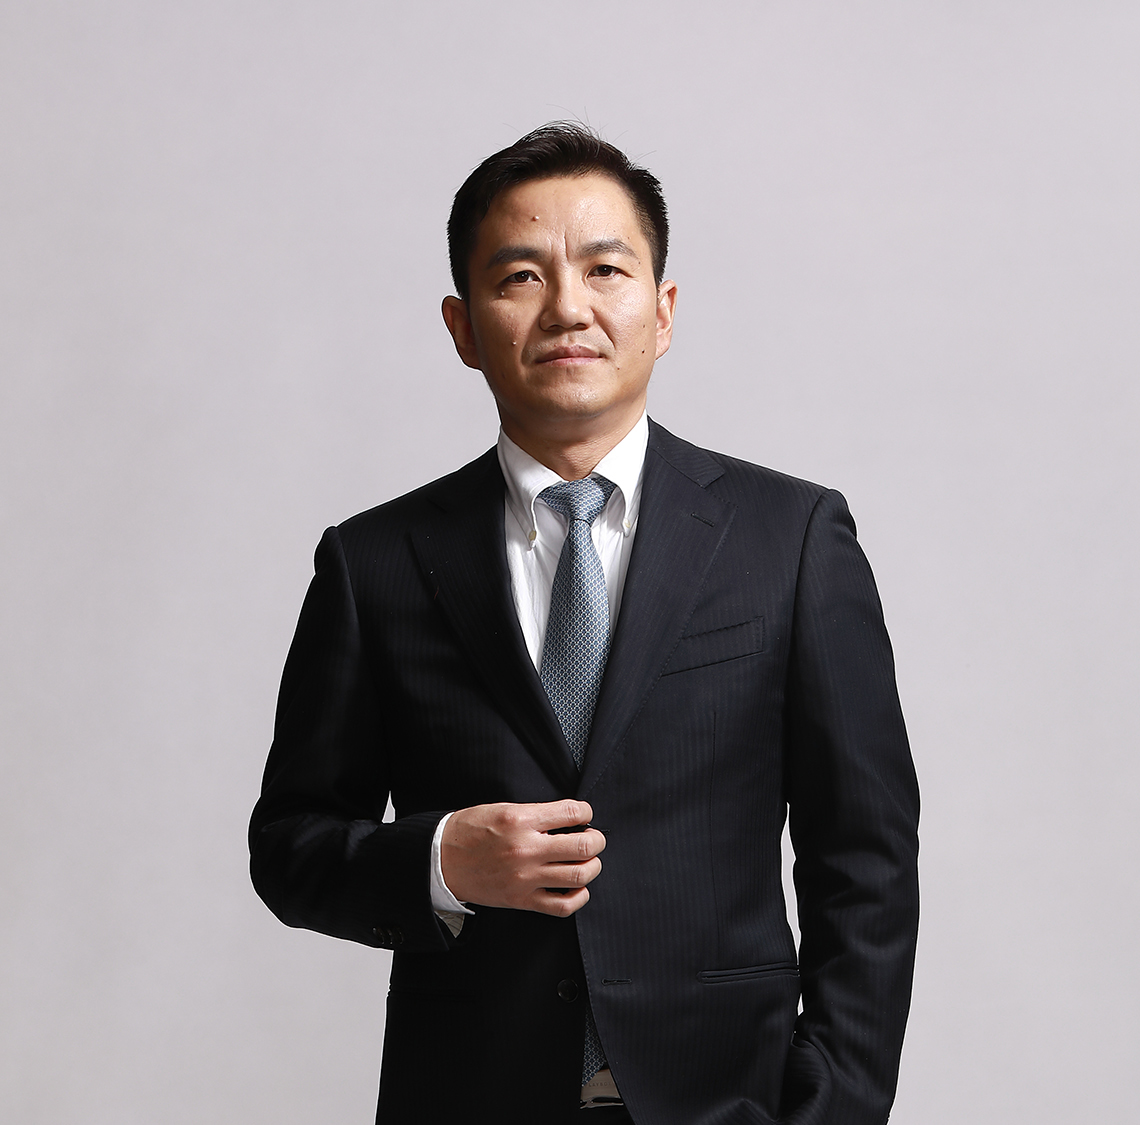 Zhang Jiao